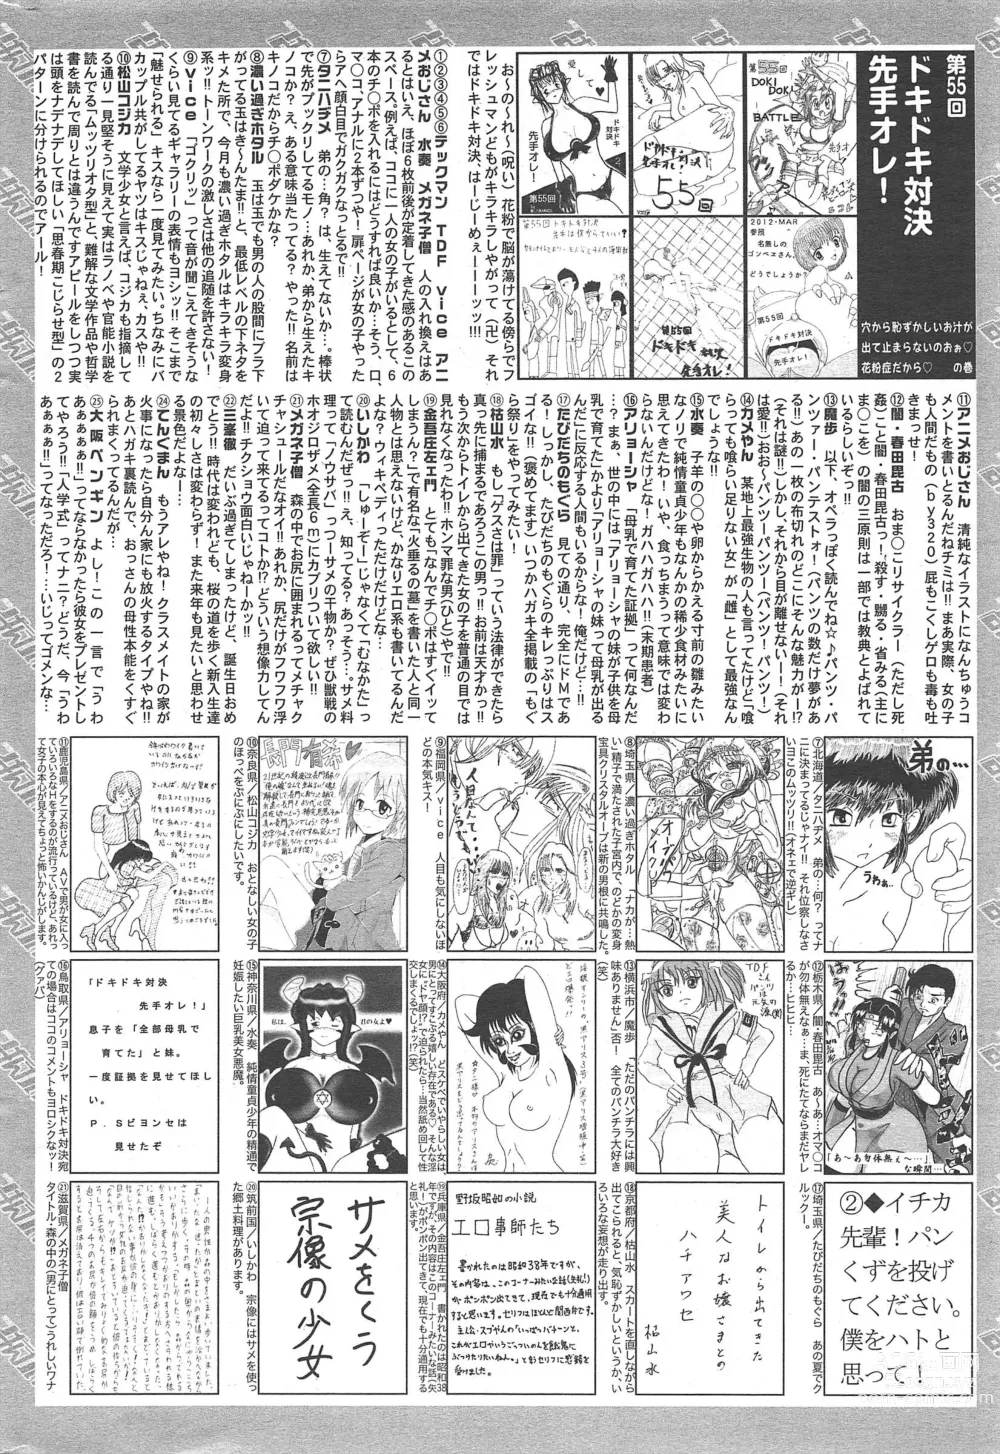 Page 324 of manga Manga Bangaichi 2012-06